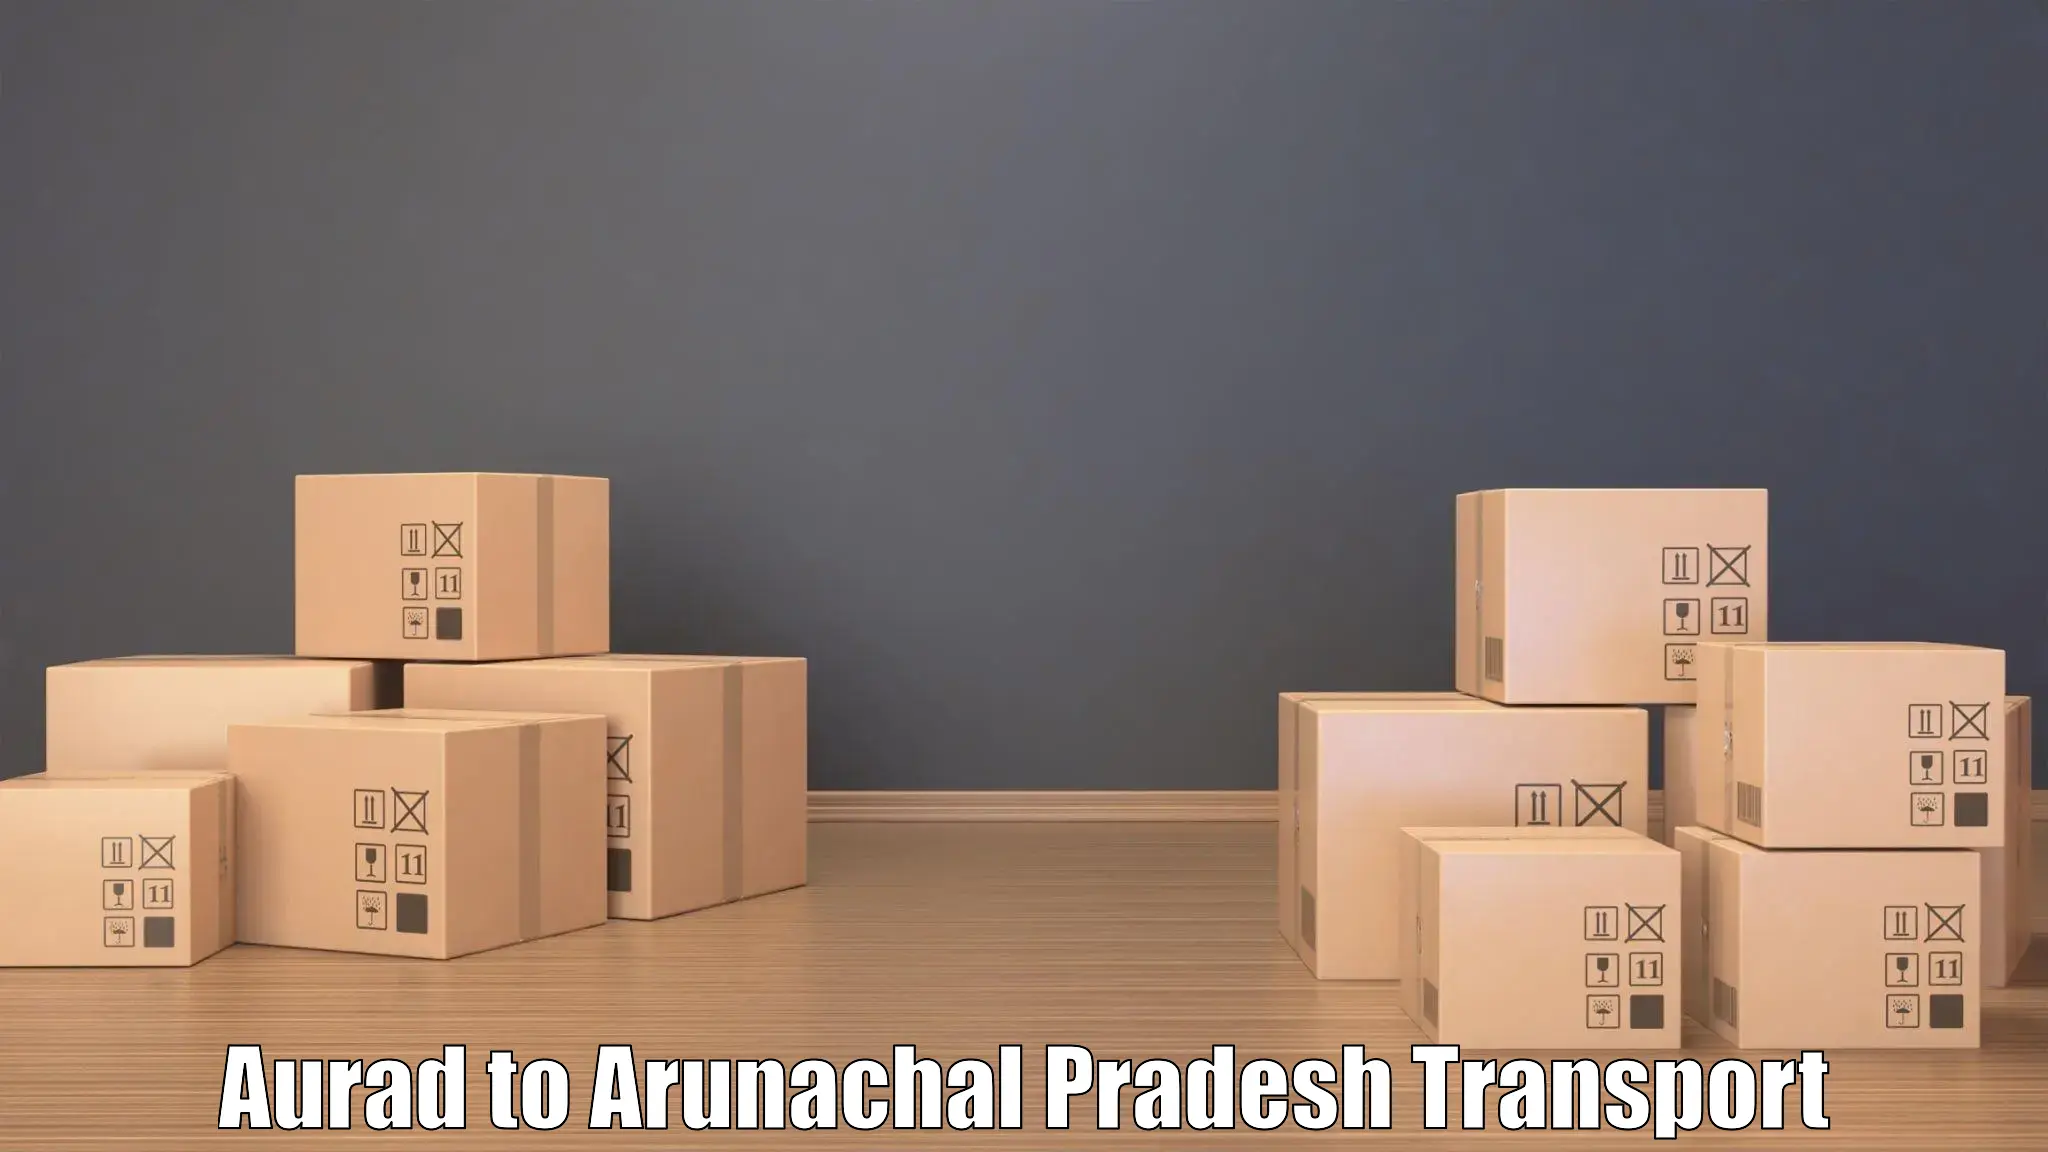 Domestic transport services Aurad to Arunachal Pradesh